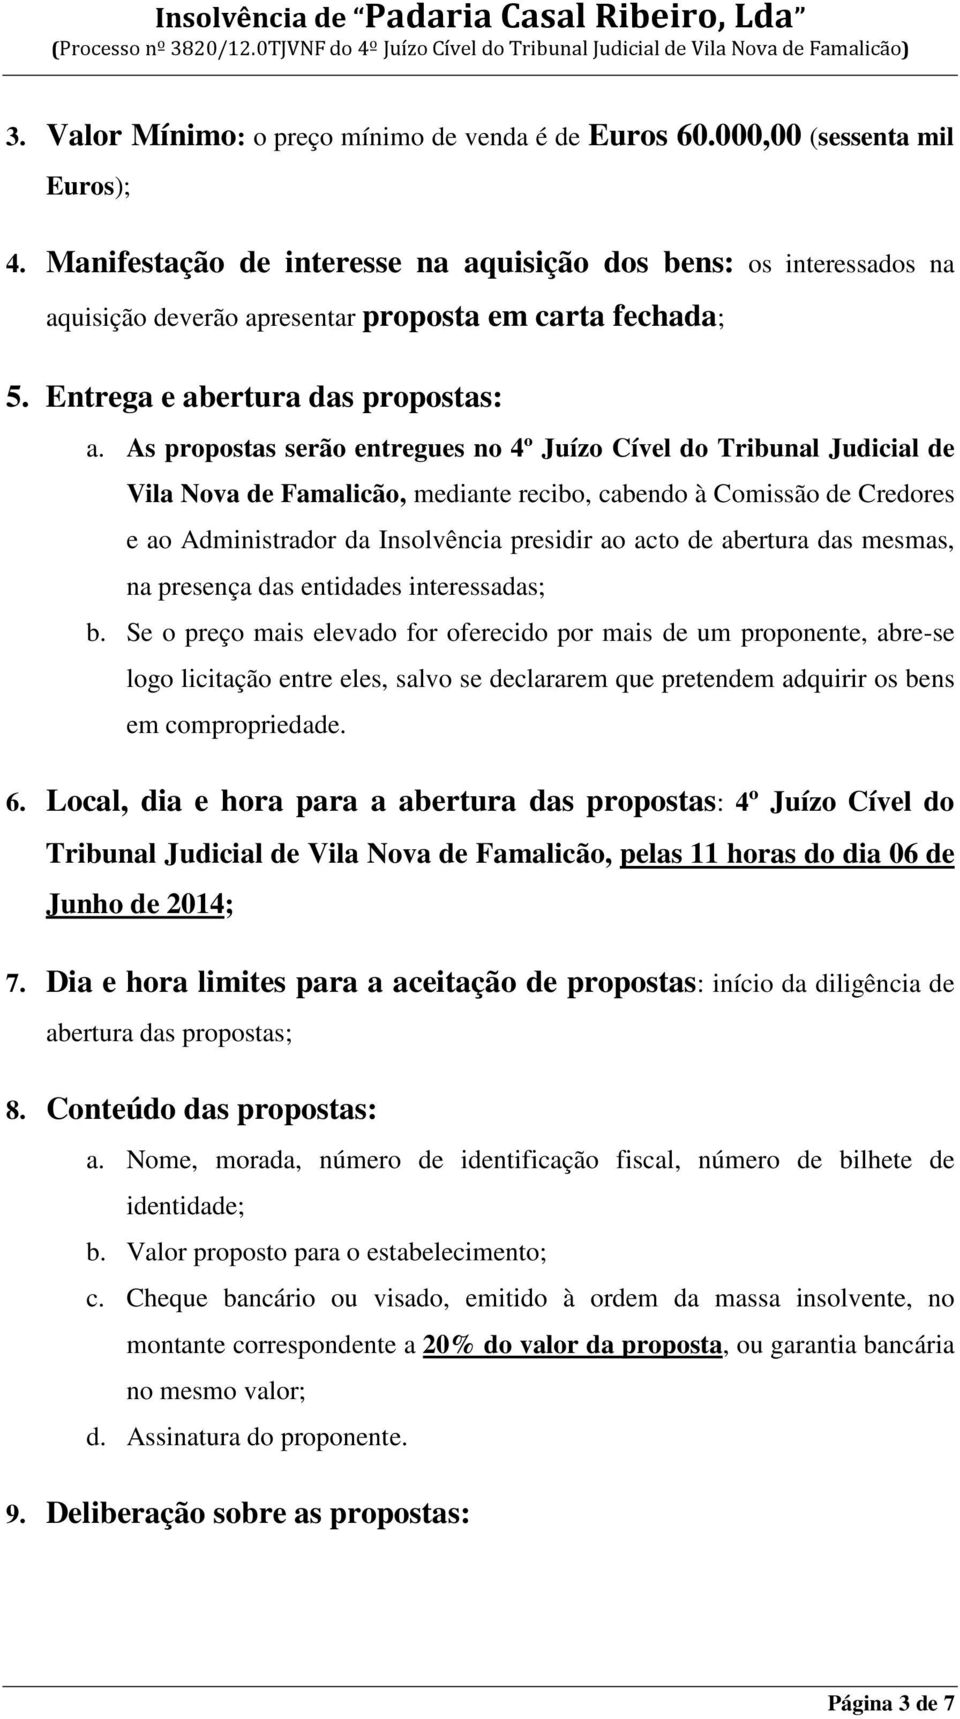 As propostas serão entregues no 4º Juízo Cível do Tribunal Judicial de Vila Nova de Famalicão, mediante recibo, cabendo à Comissão de Credores e ao Administrador da Insolvência presidir ao acto de